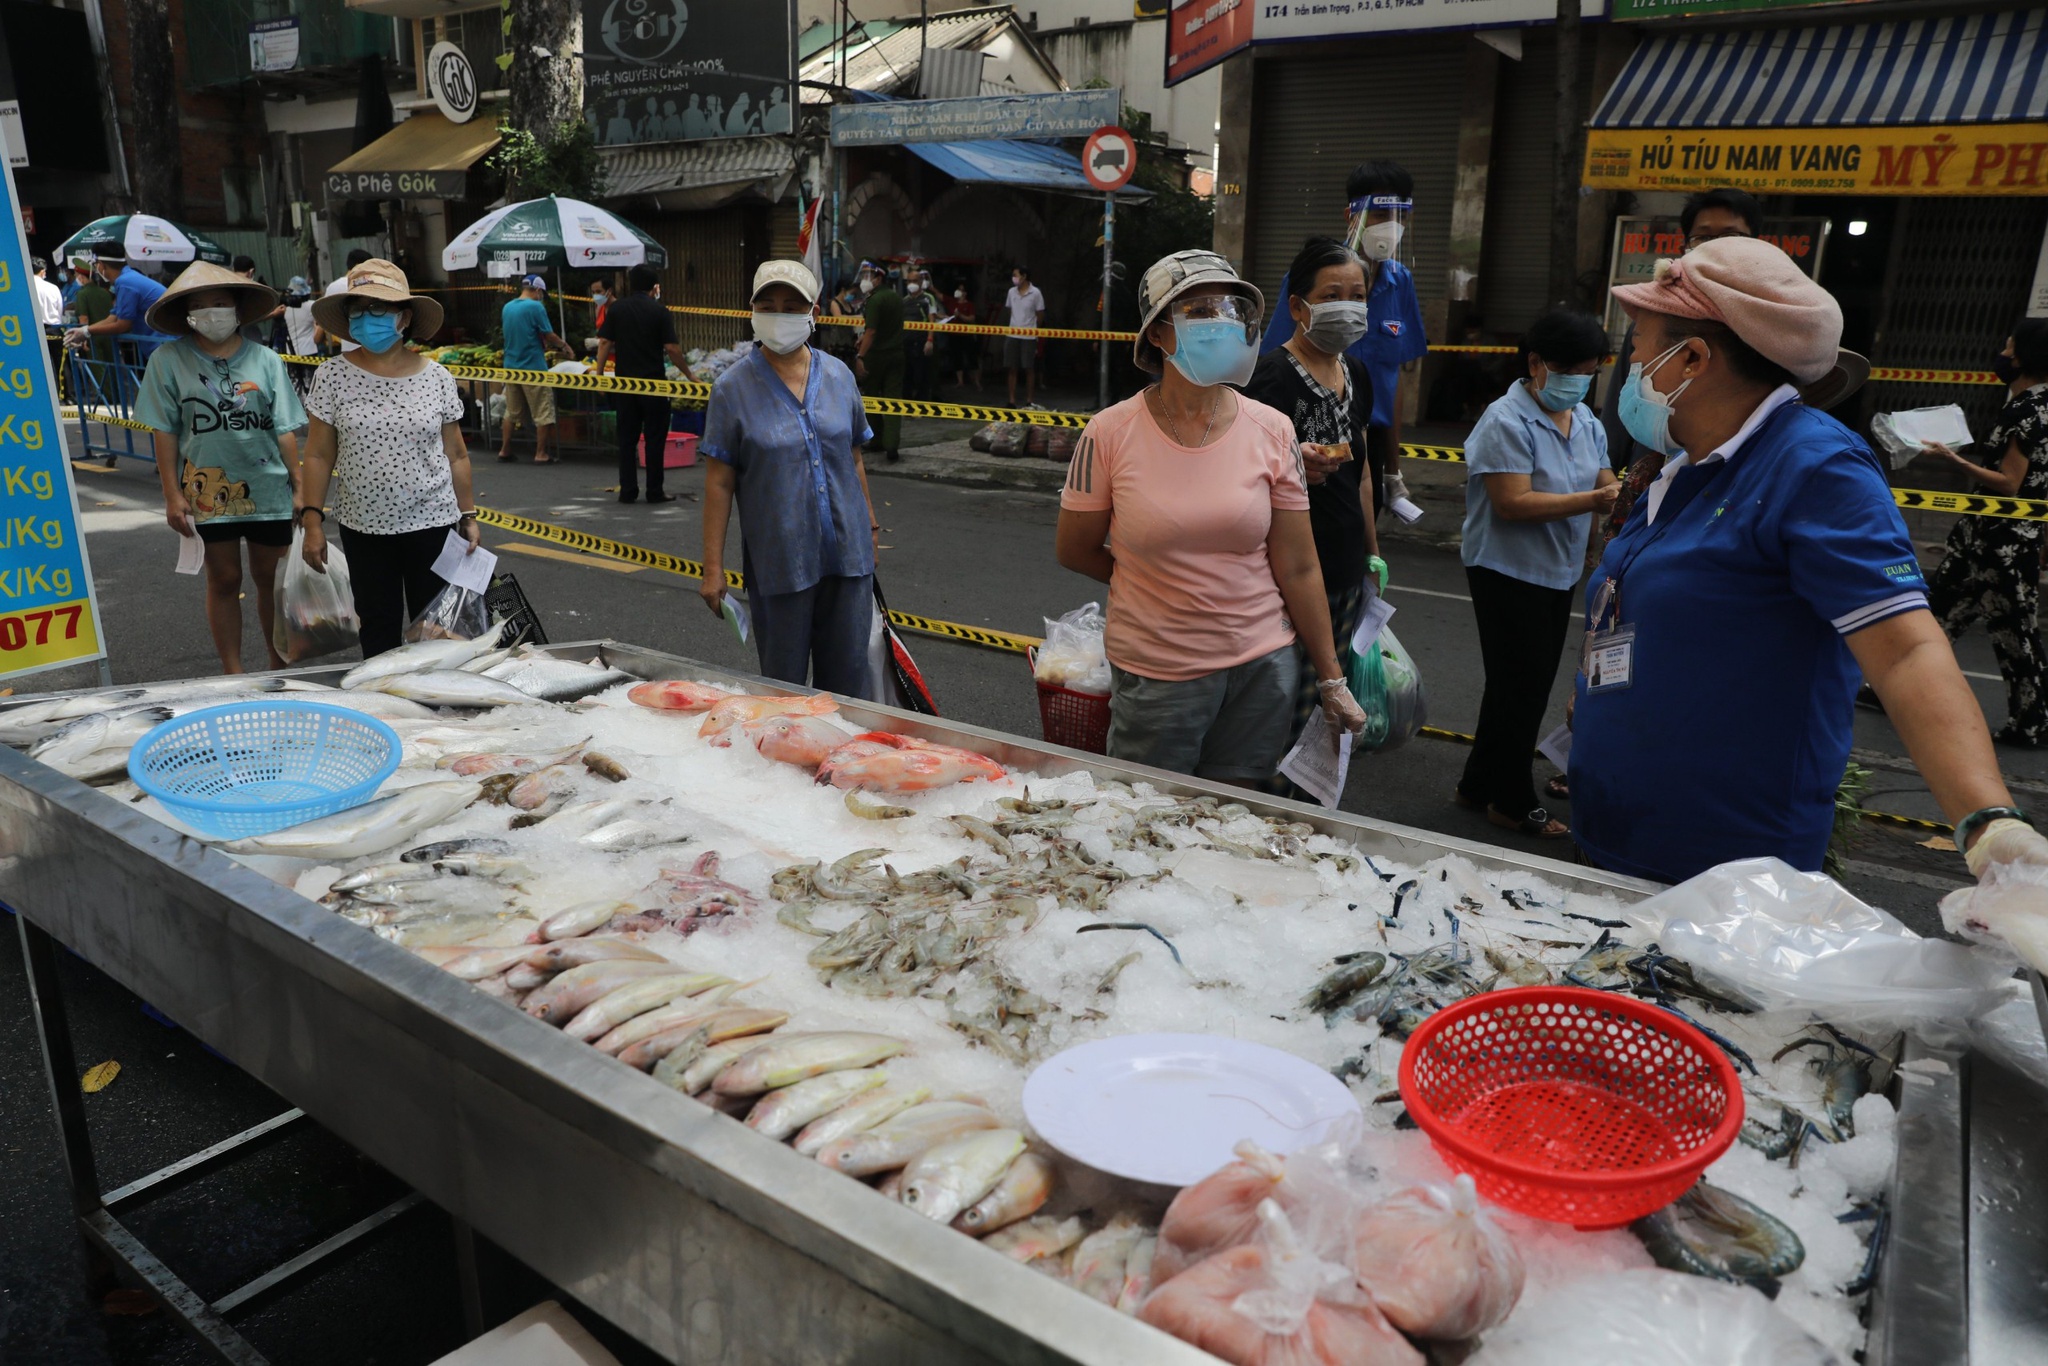 Mua thực phẩm giá rẻ tại ‘chợ dã chiến’ trên đường phố Sài Gòn